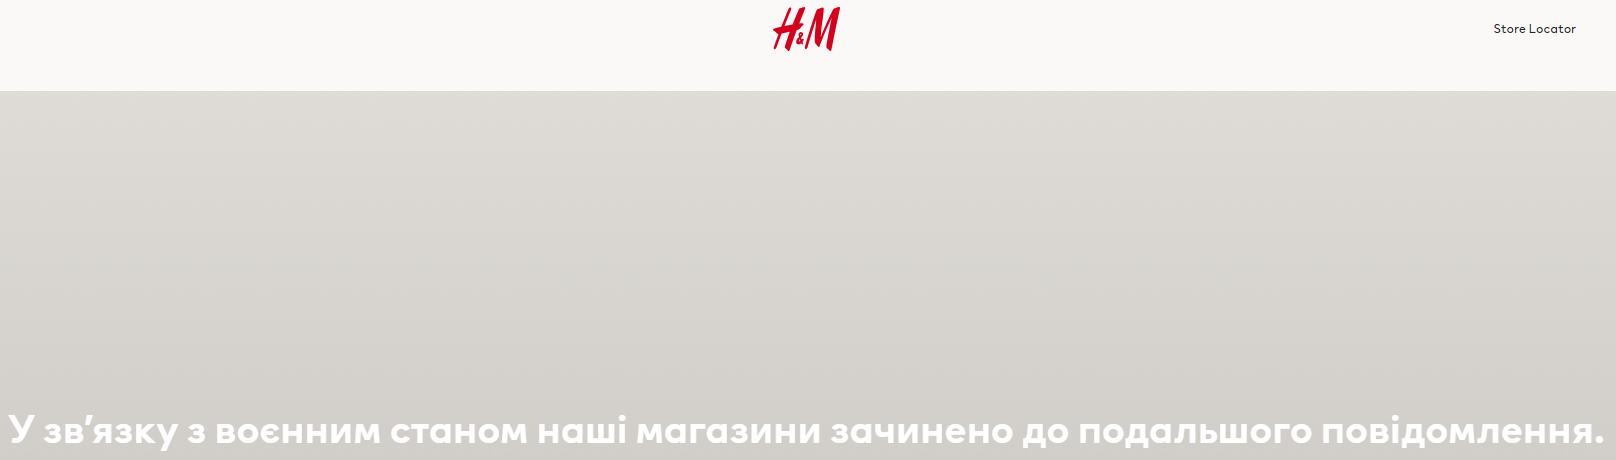 Когда Zara, H&M, IKEA заработают в Украине. Правда и слухи о возвращении брендов